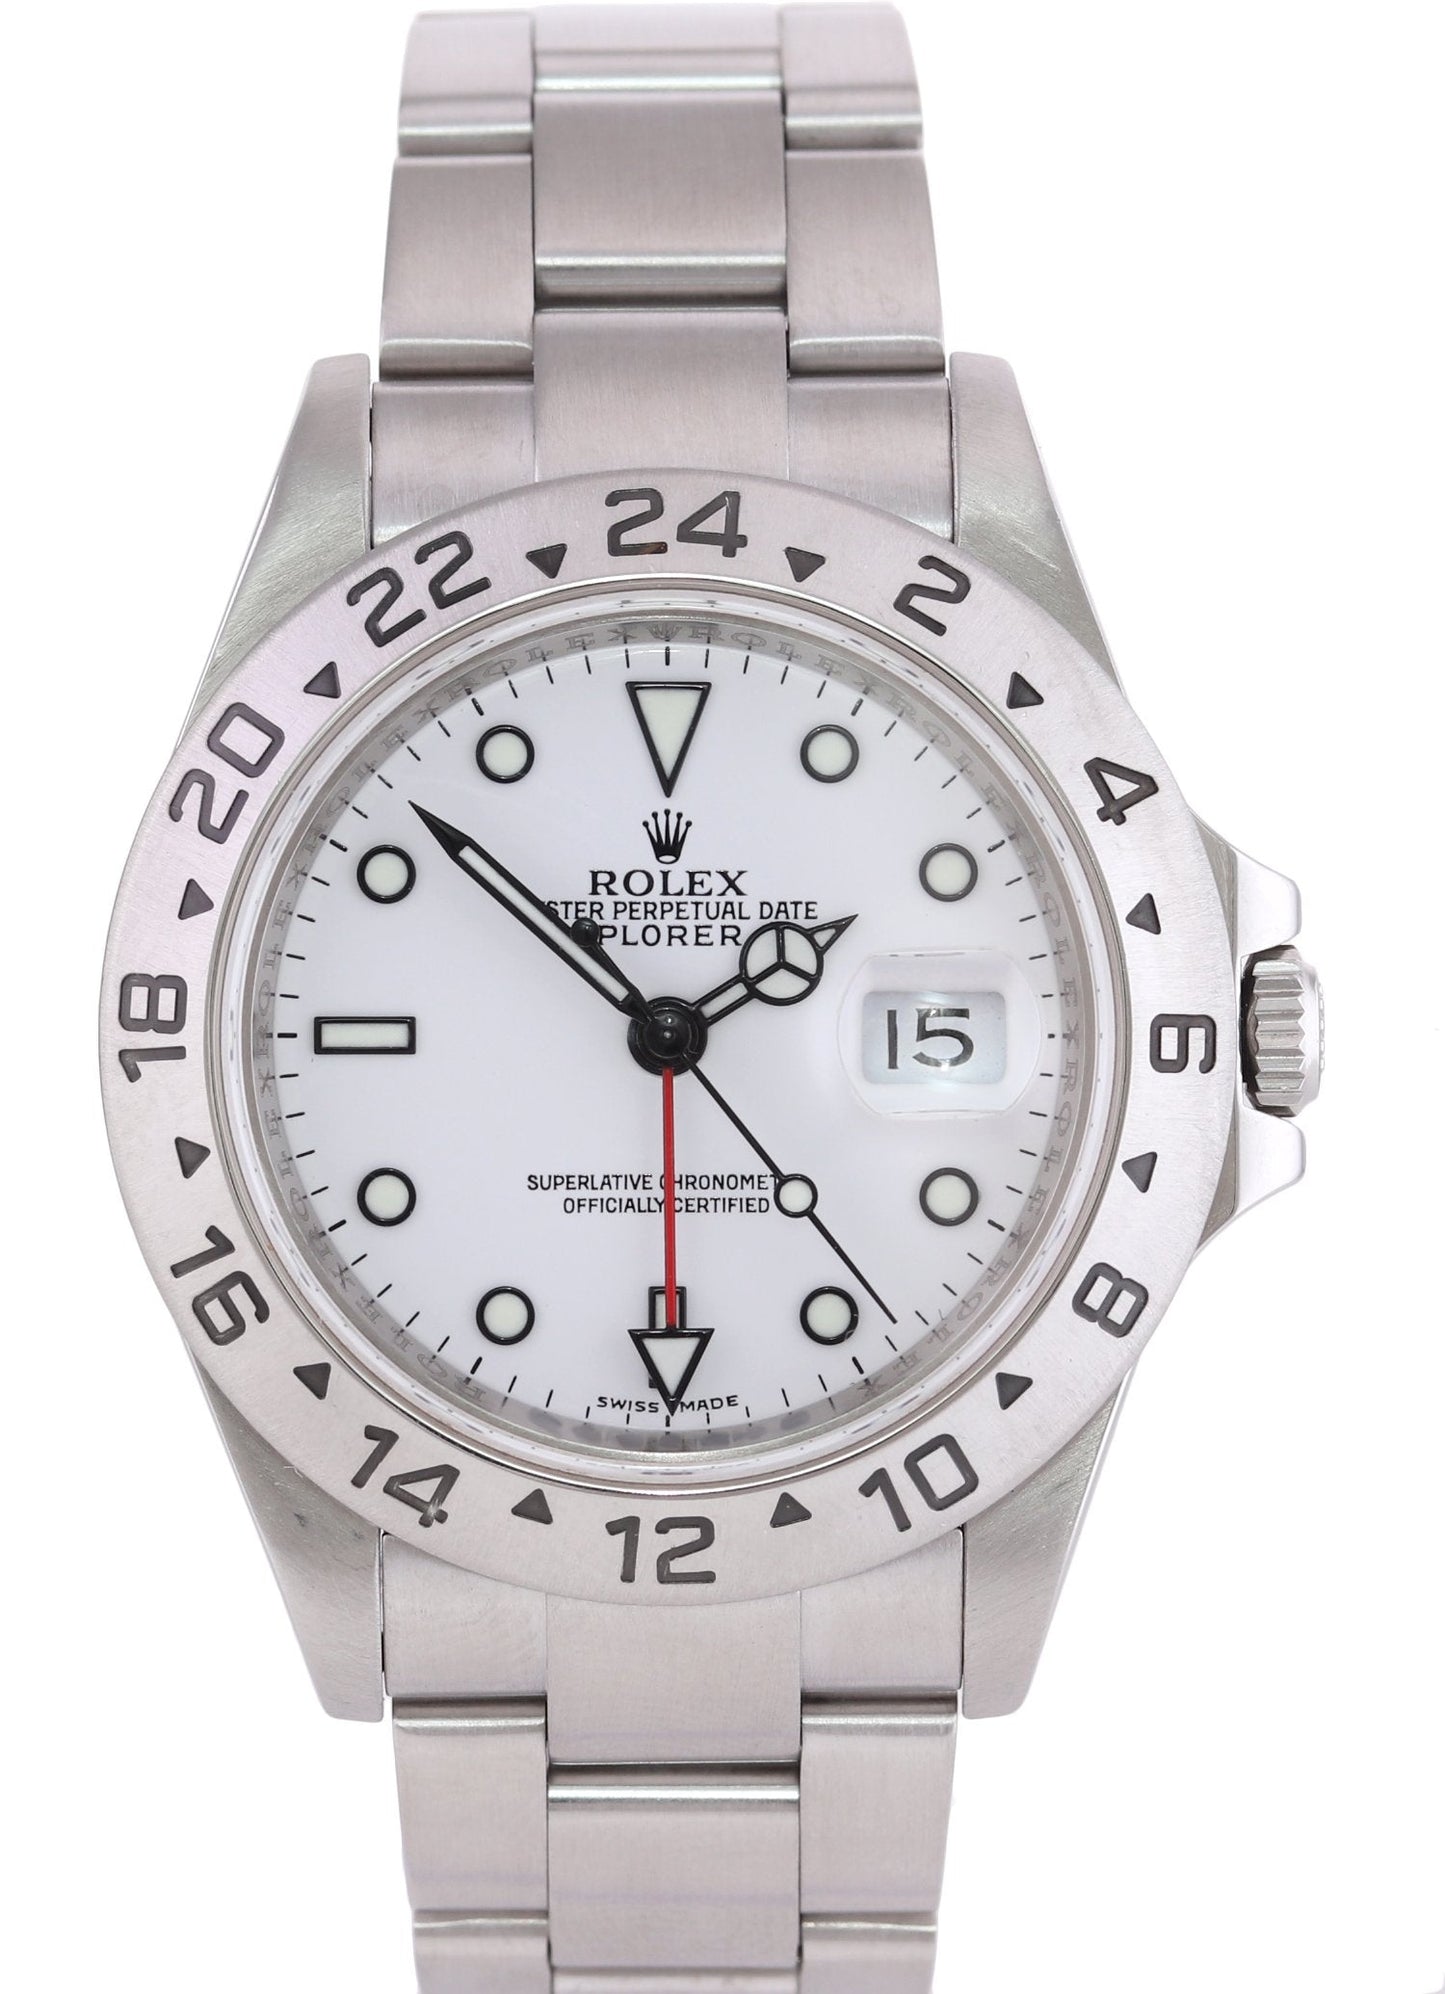 MINT 2009 ENGRAVED REHAUT Rolex Explorer II 16570 Polar 40mm Date 3186 Watch Box